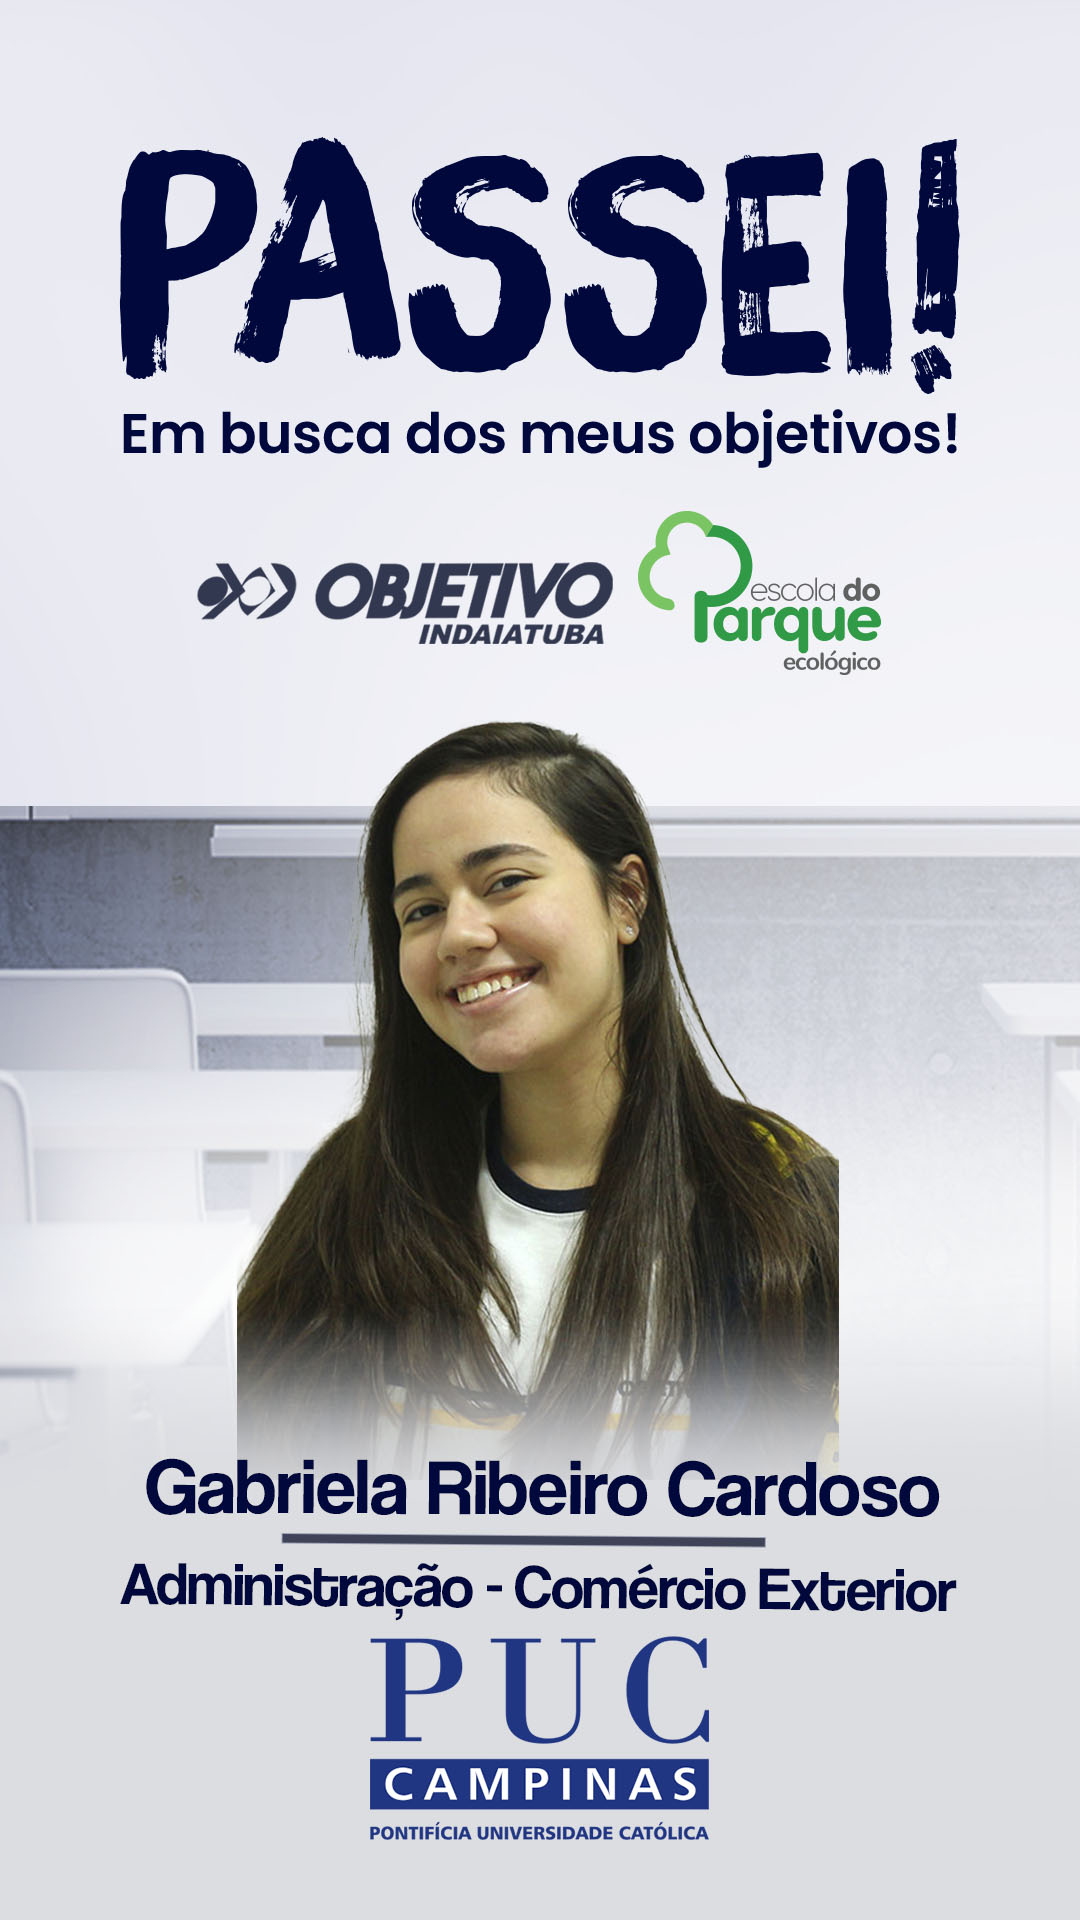 Gabriela Ribeiro Cardoso